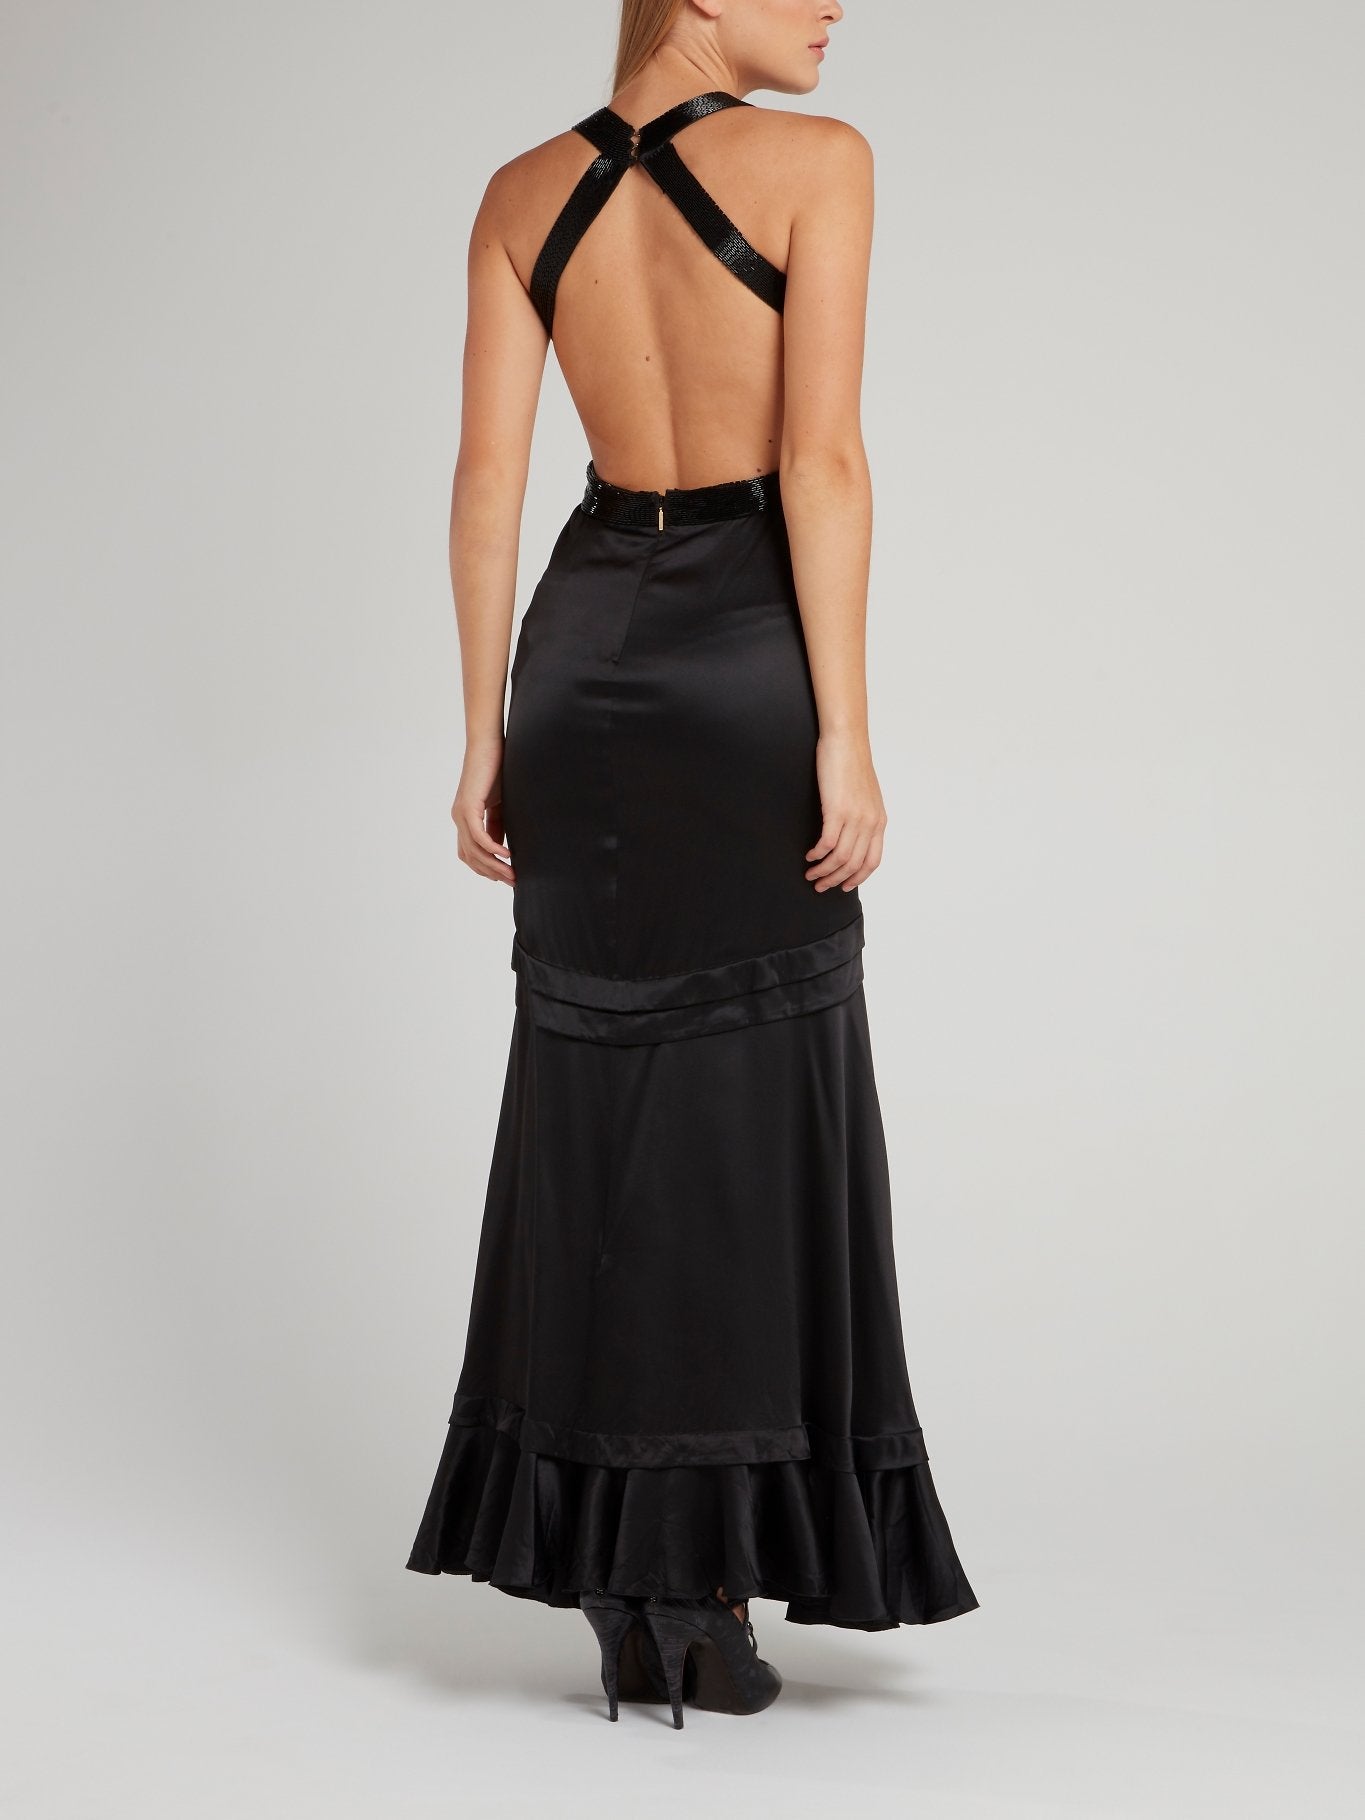 Black Embellished Halter Maxi Dress